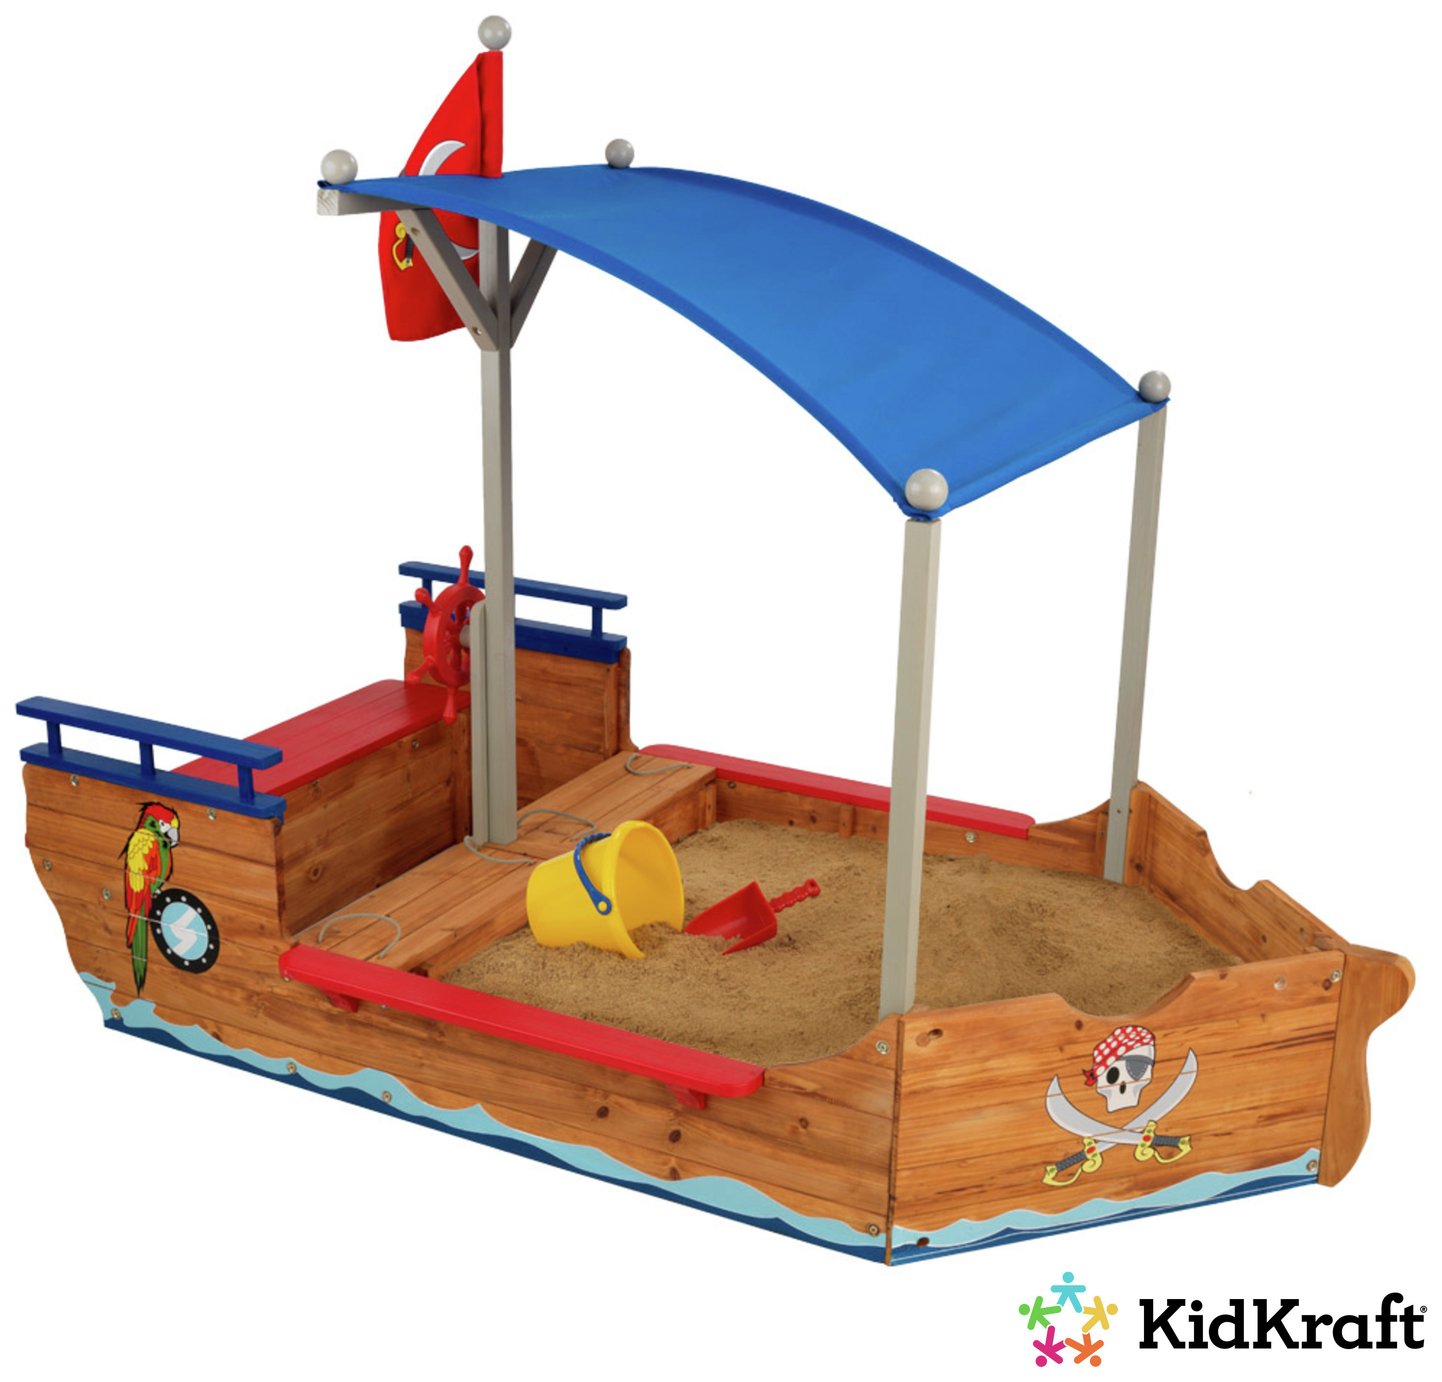 KidKraft Pirate Sandboat Sandbox Review